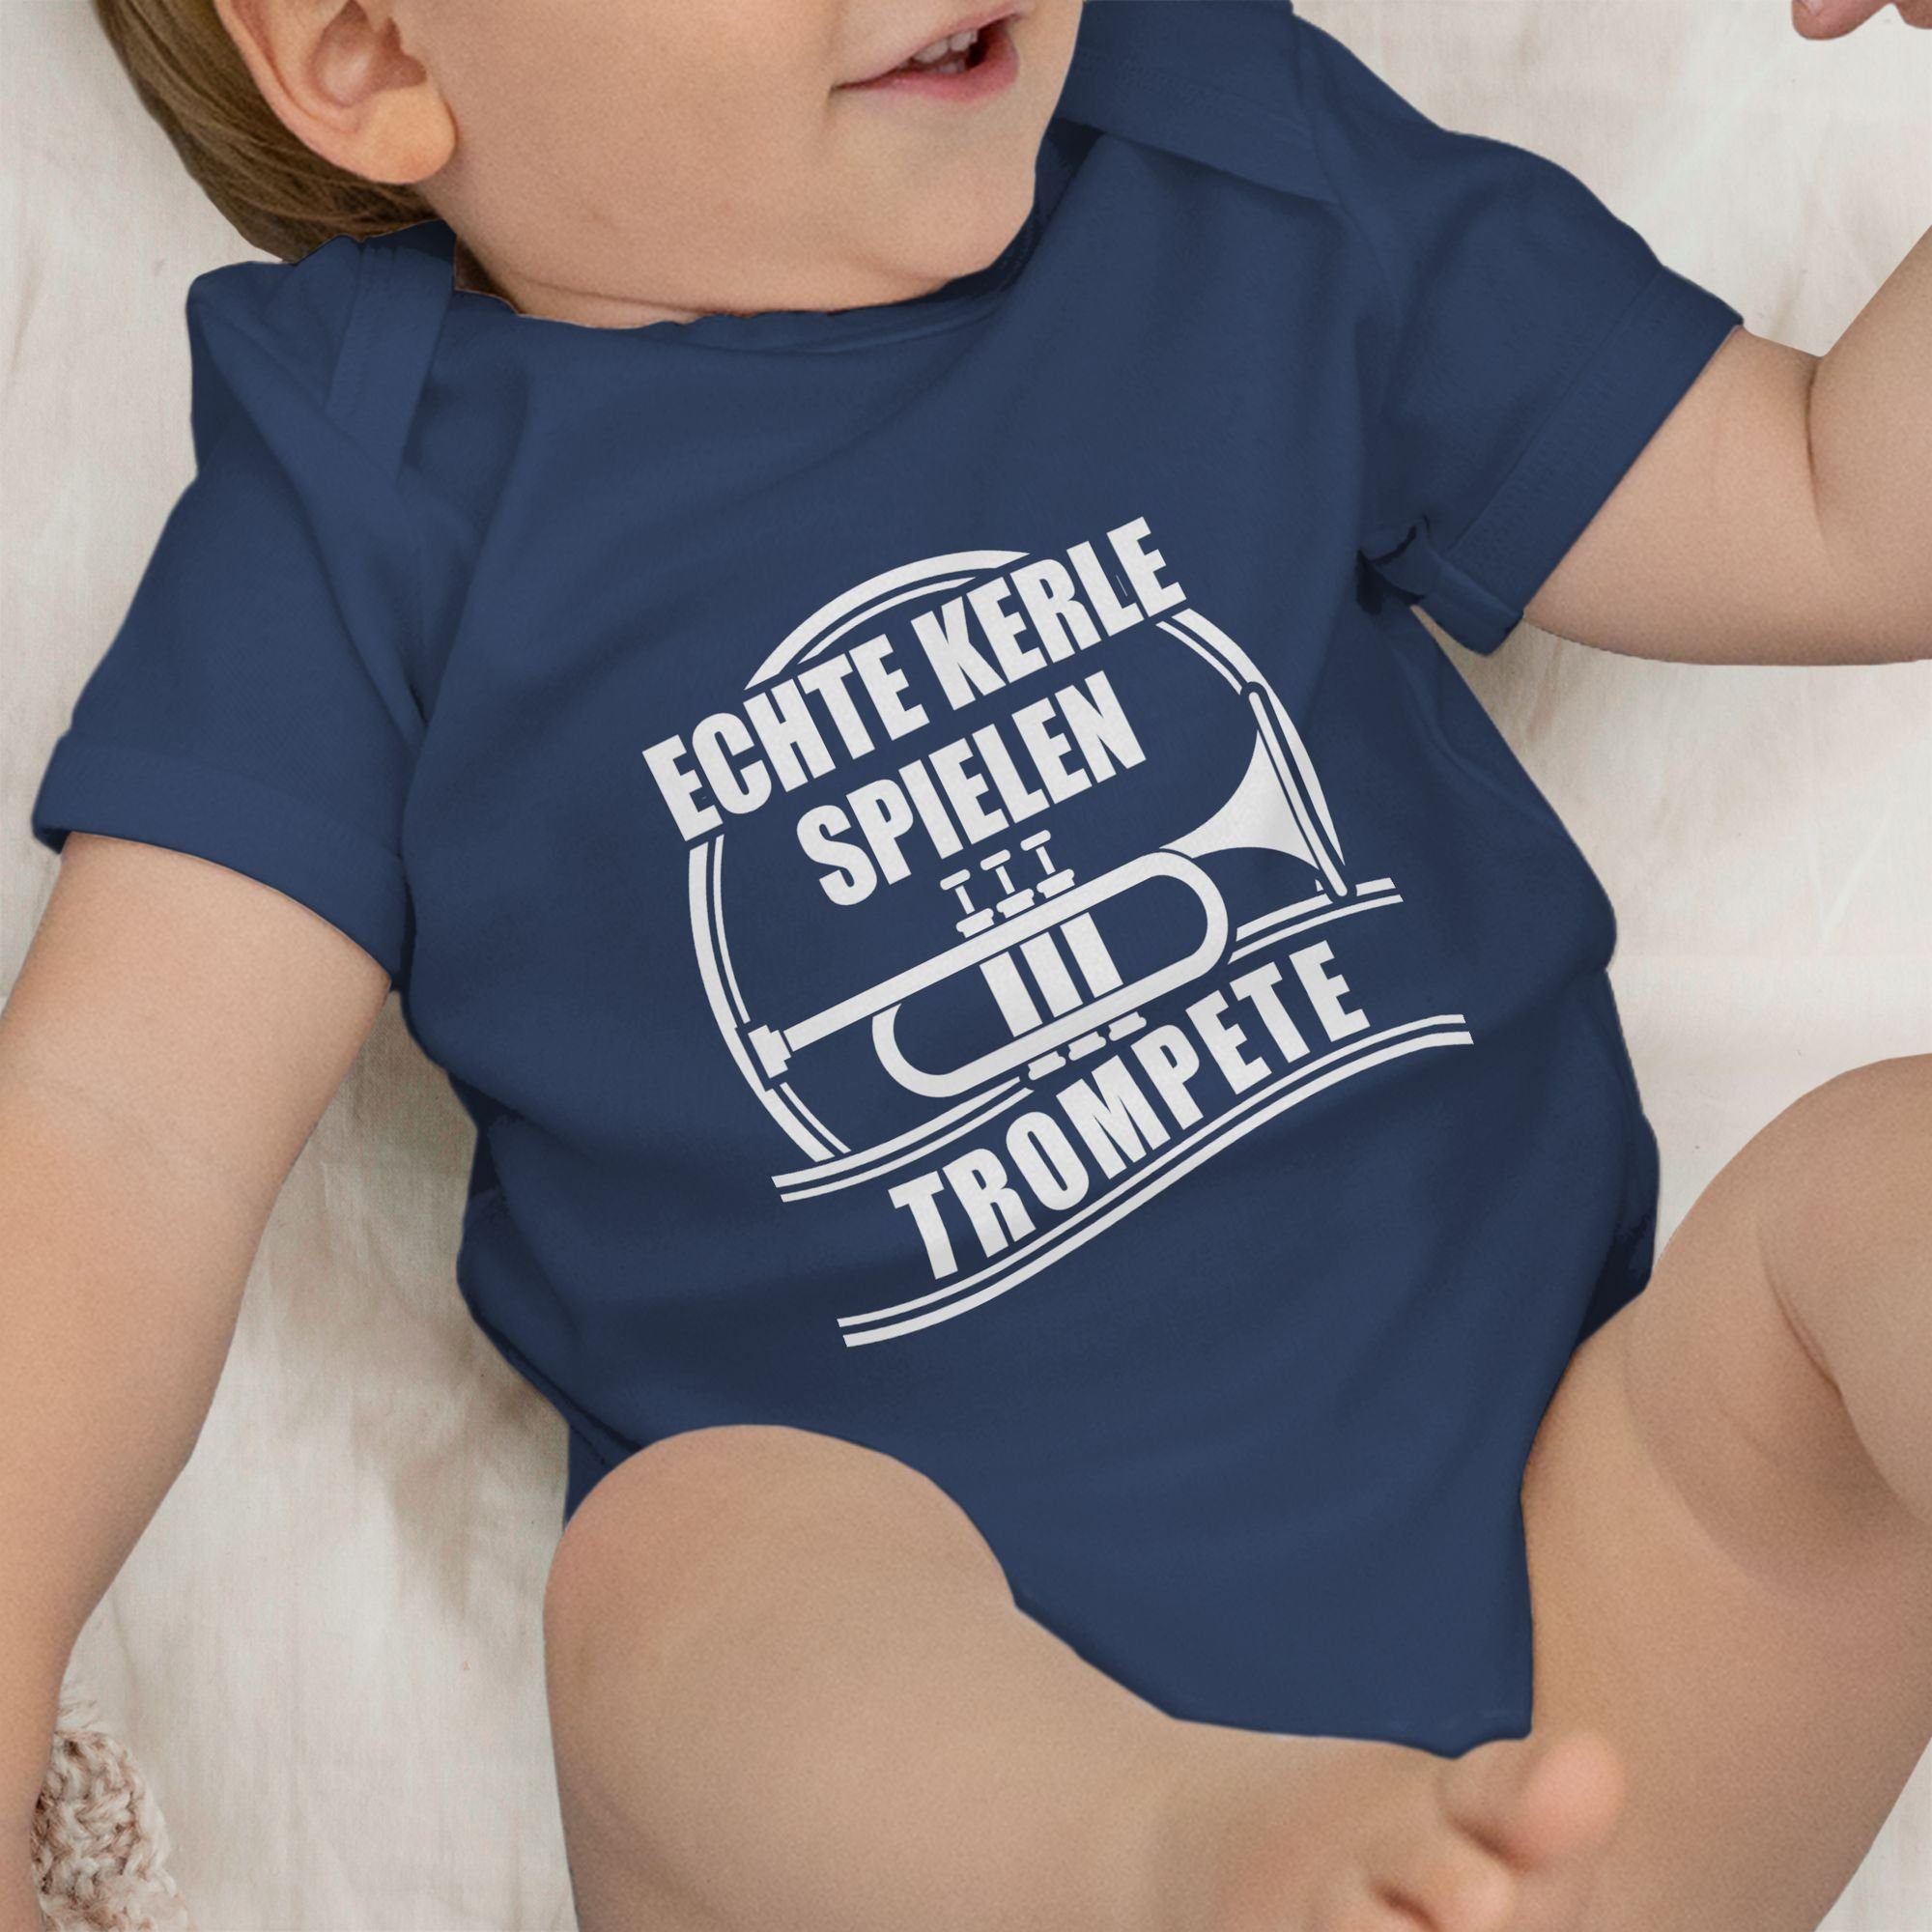 Baby Trompete spielen Shirtracer Navy 1 Blau Sprüche Kerle Shirtbody Echte